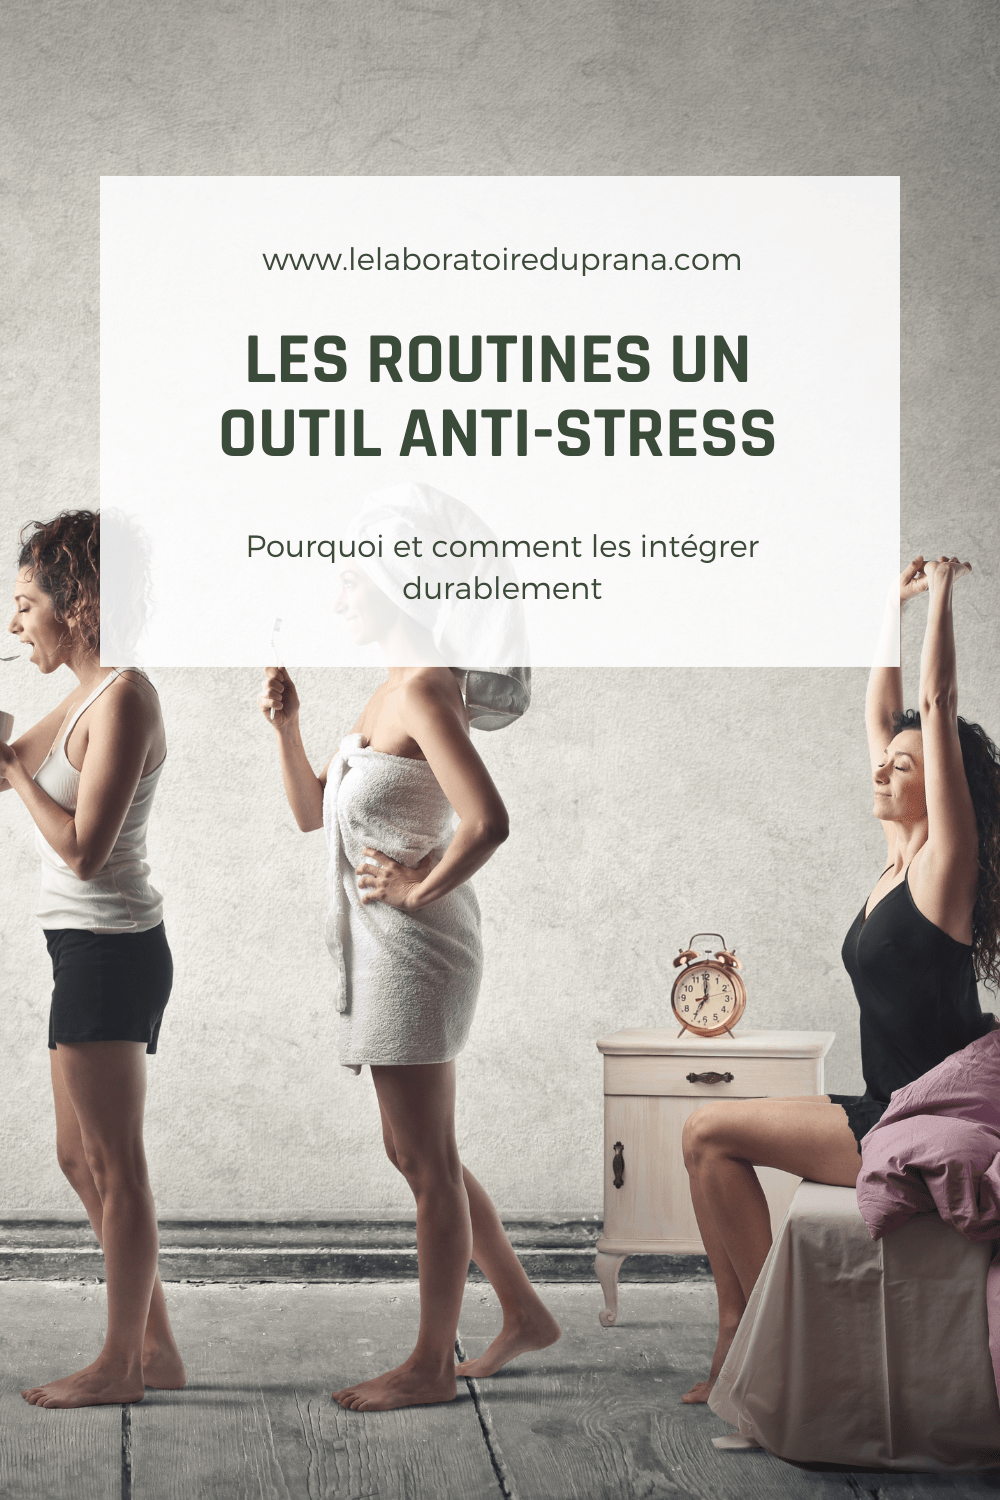 Les routines, un outil anti-stress efficace